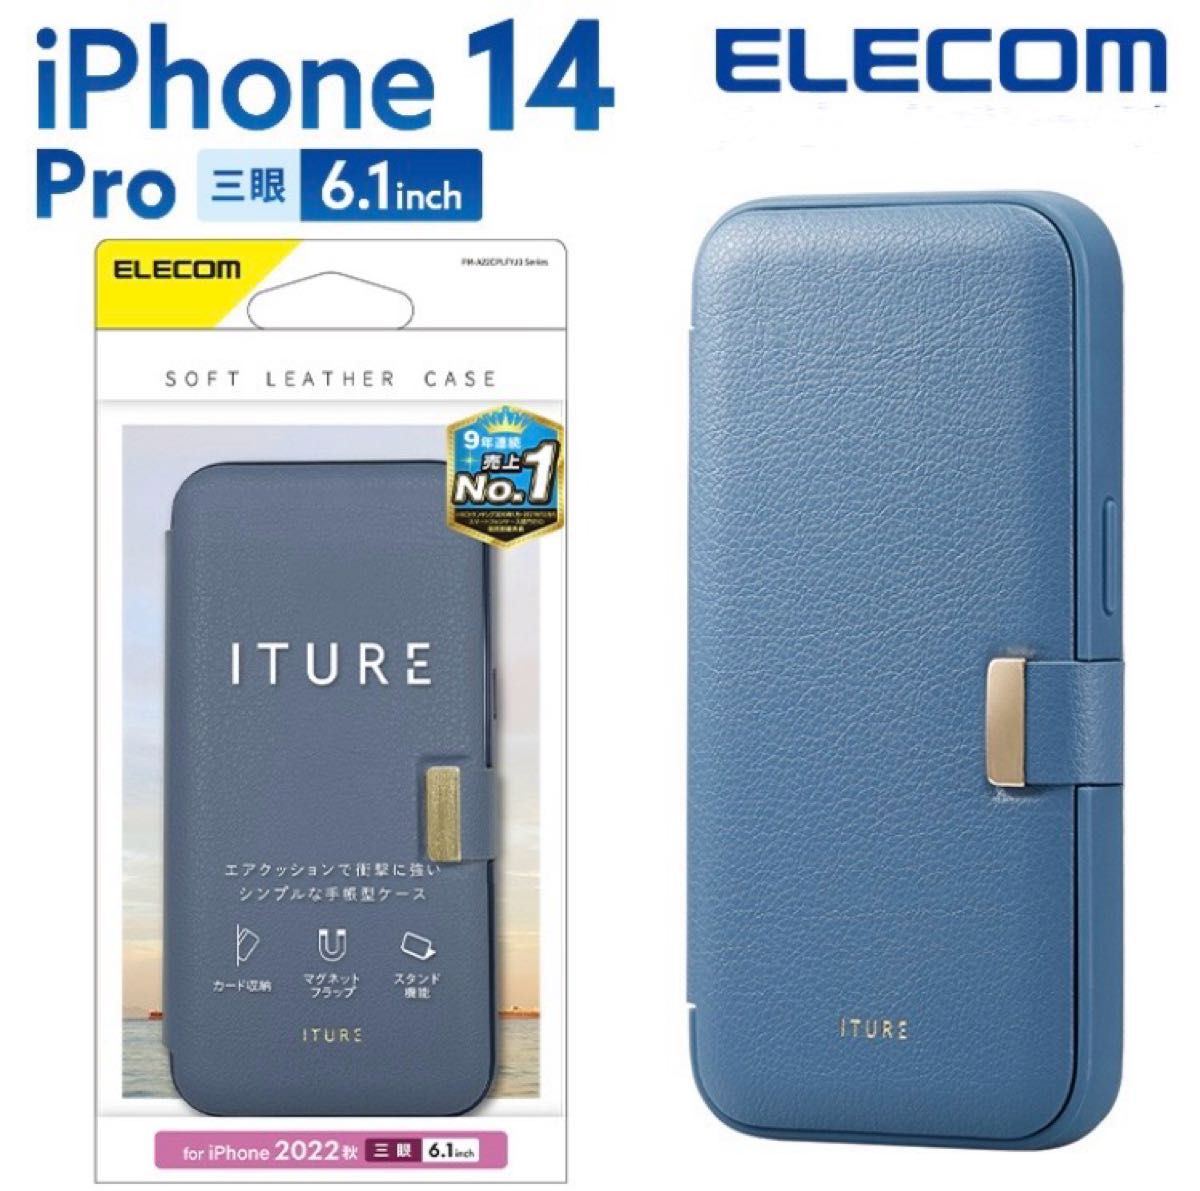 エレコム iPhone 14 Pro 用 ソフトレザーケース 手帳型 磁石付き ITURE iPhone14 Pro 6.1インチ